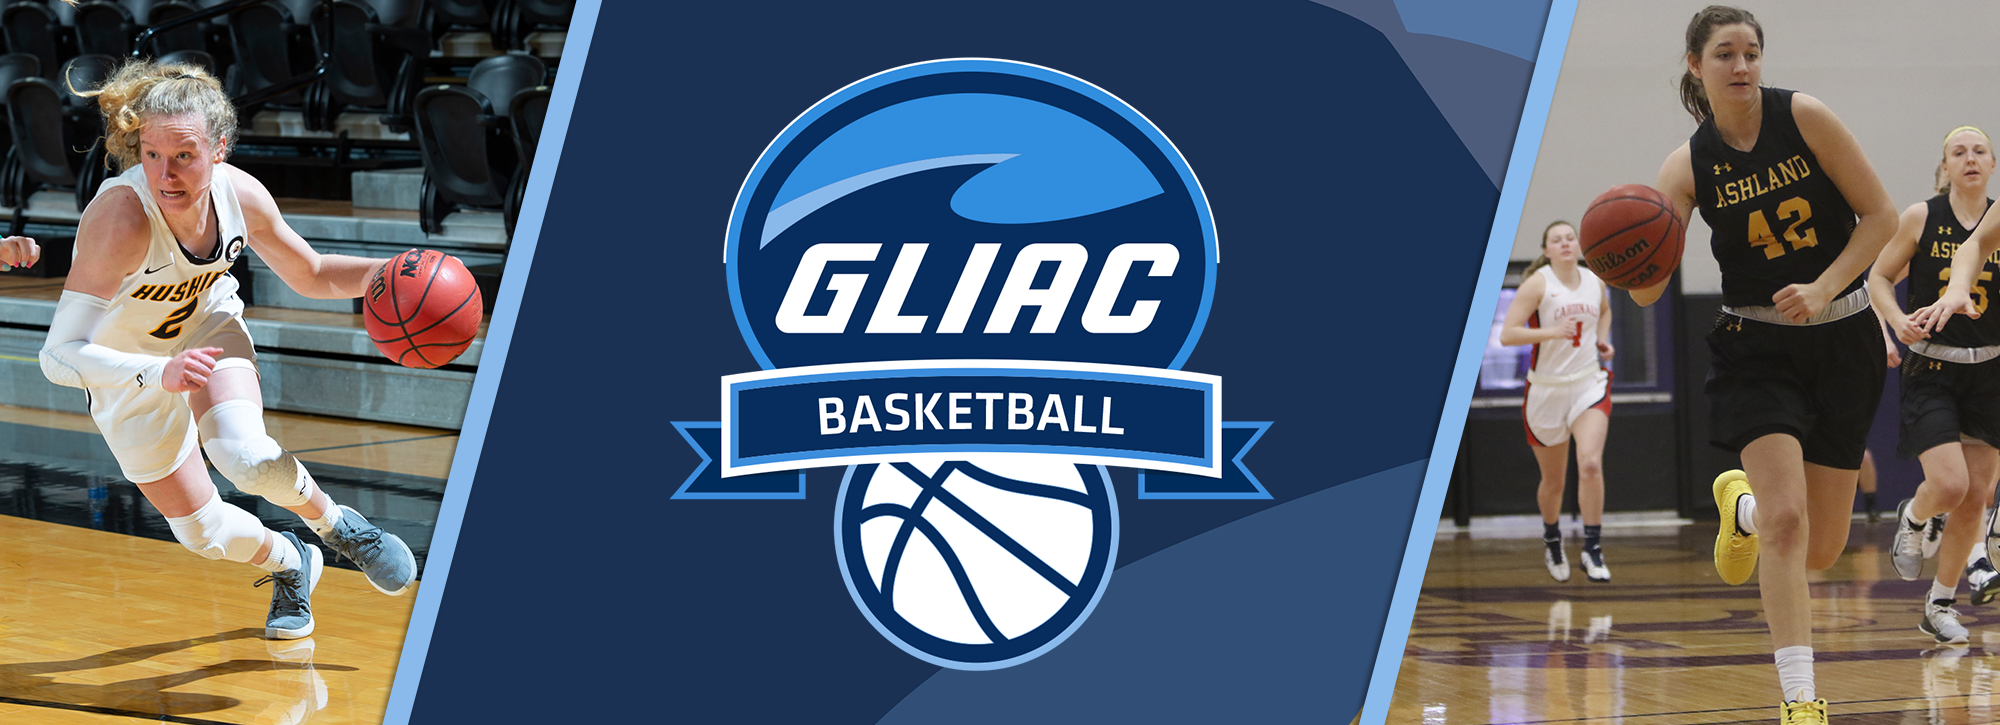 MTU's Mackay, AU's Roshak Claim GLIAC Women's Basketball Weekly Honors